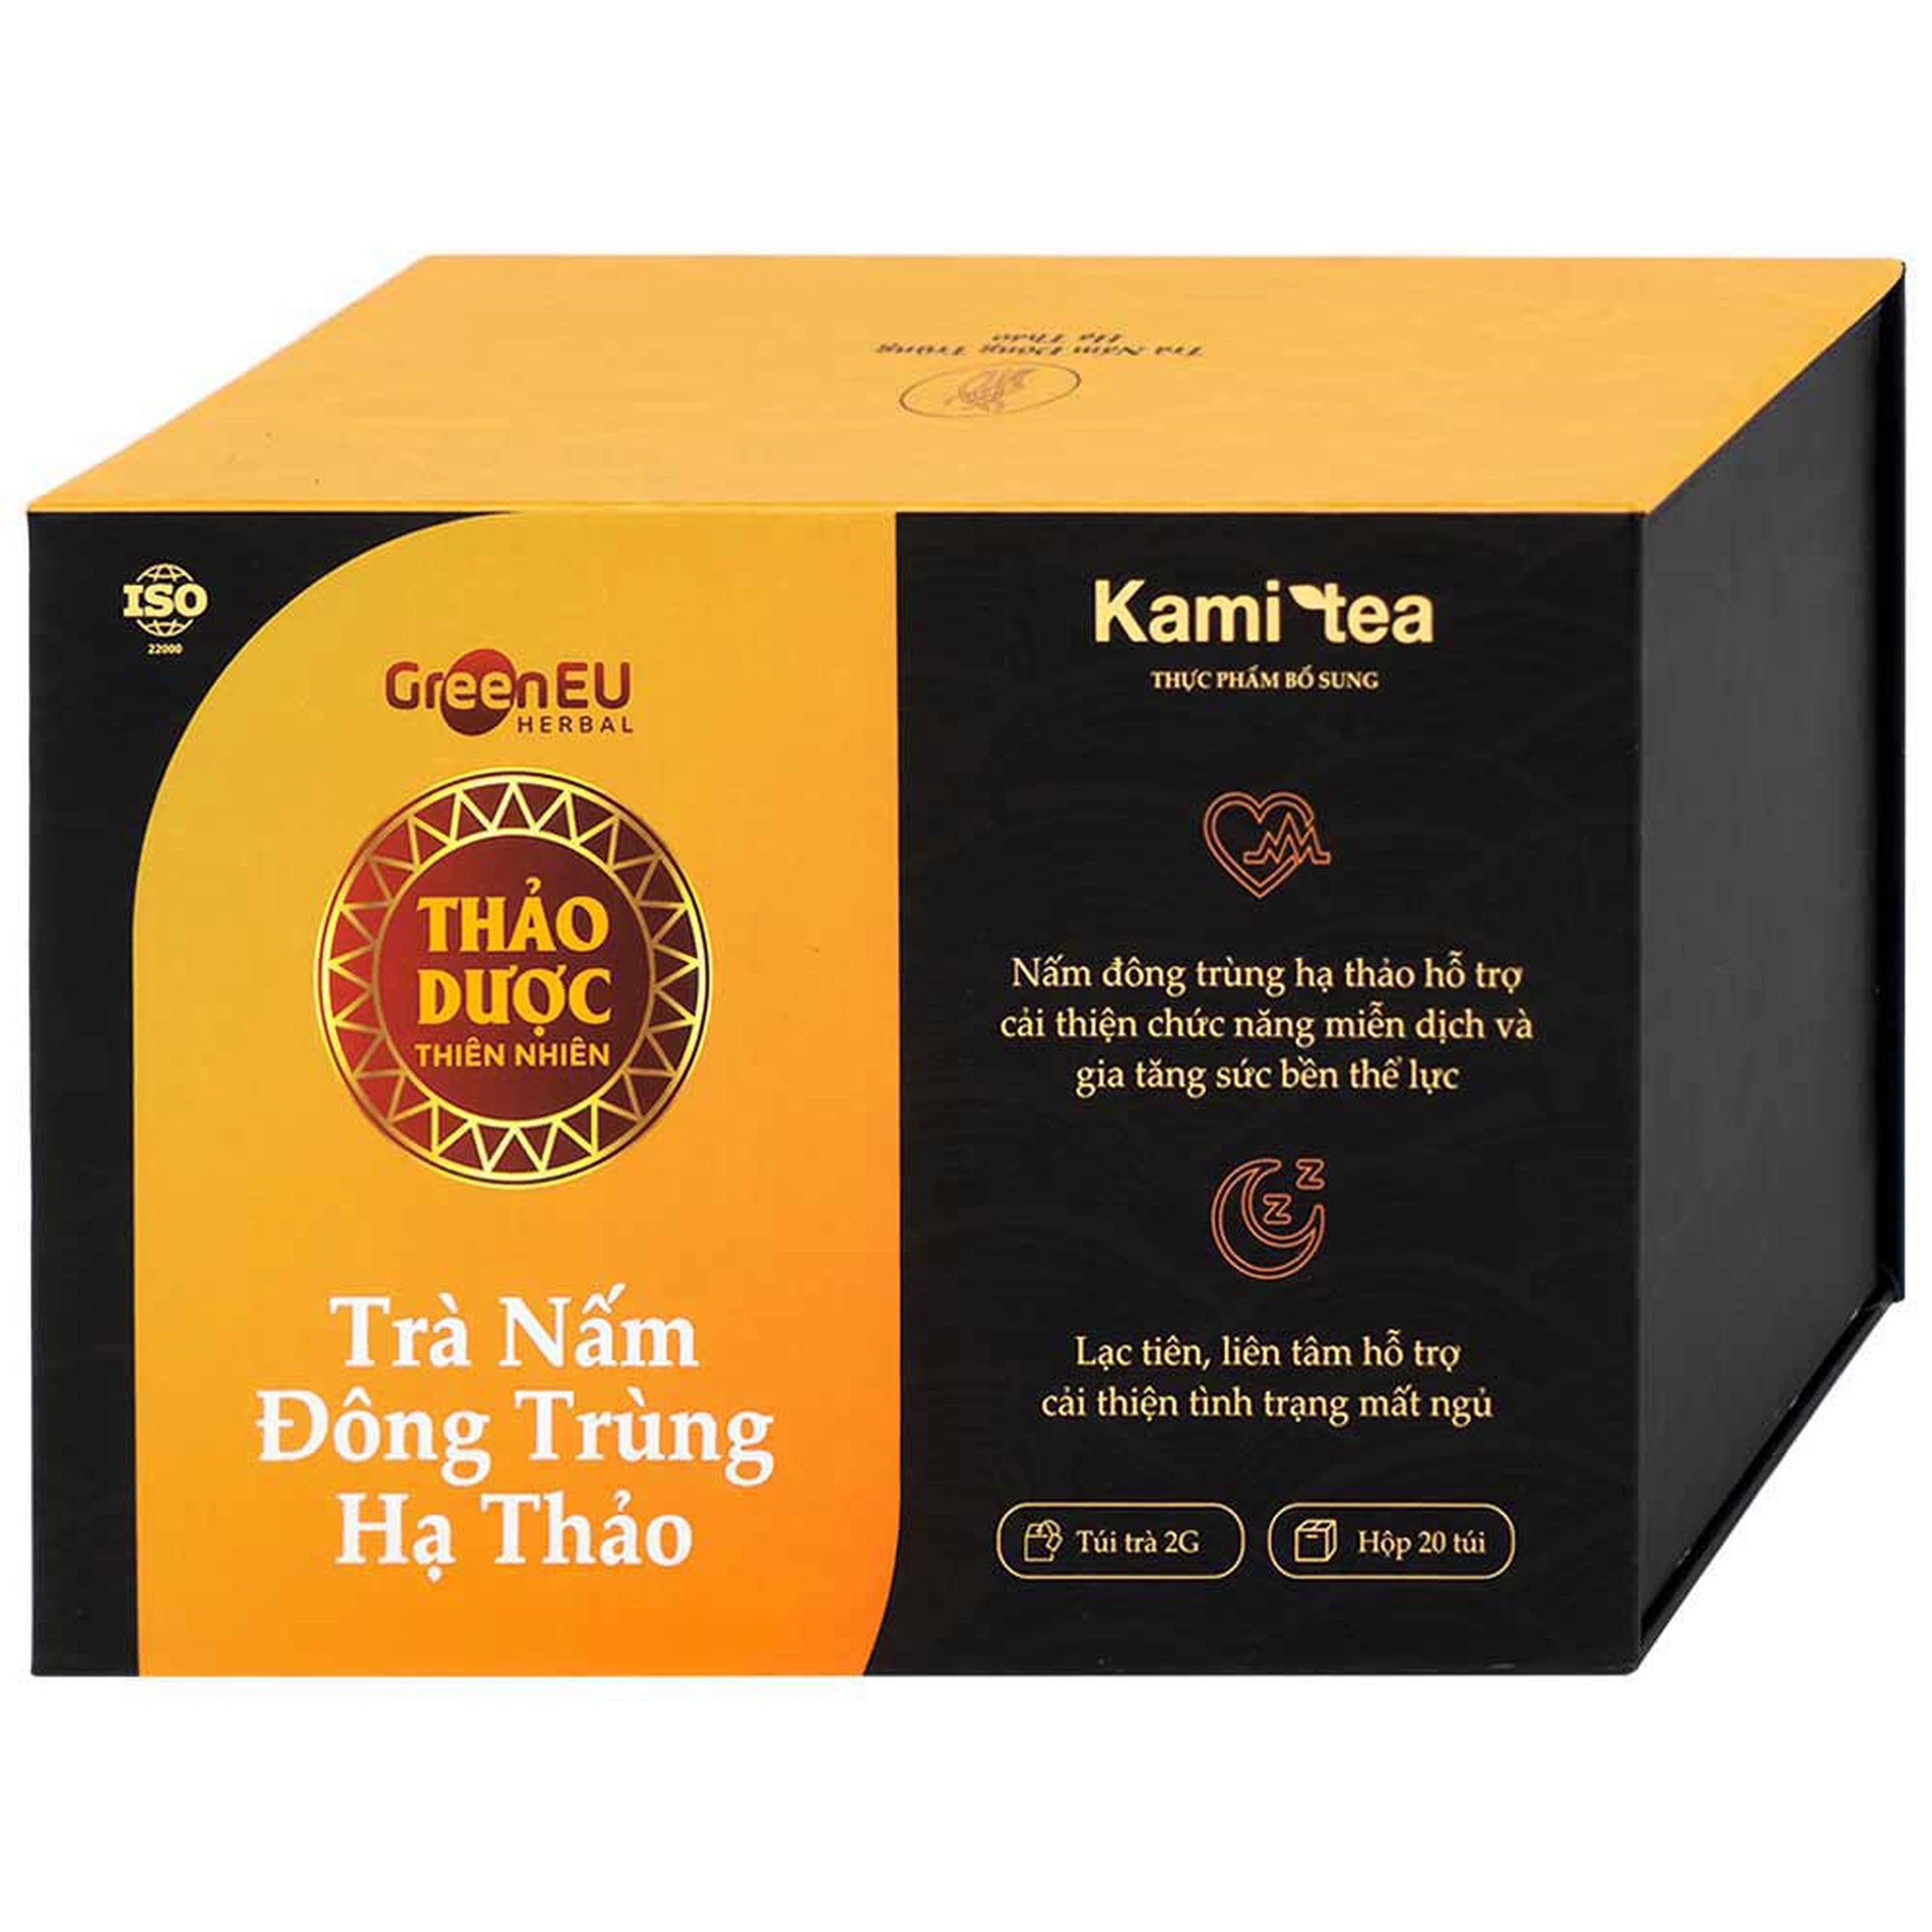 Trà Nấm Đông Trùng Hạ Thảo Kami tea hỗ trợ cải thiện chức năng miễn dịch, cải thiện tình trạng mất ngủ (20 túi)